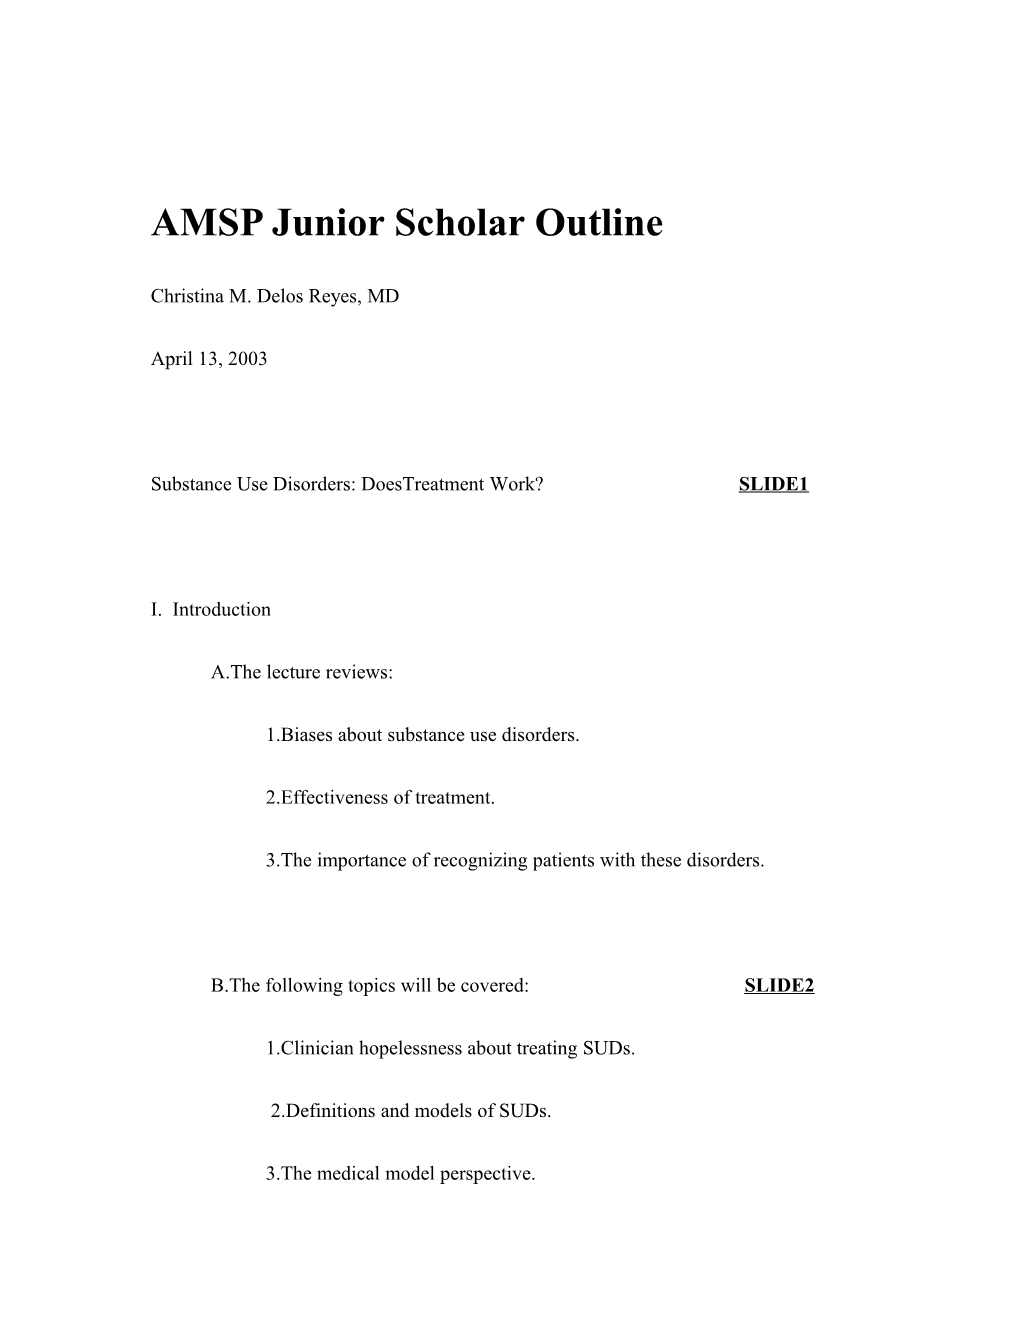 AMSP Junior Scholar Outline 4